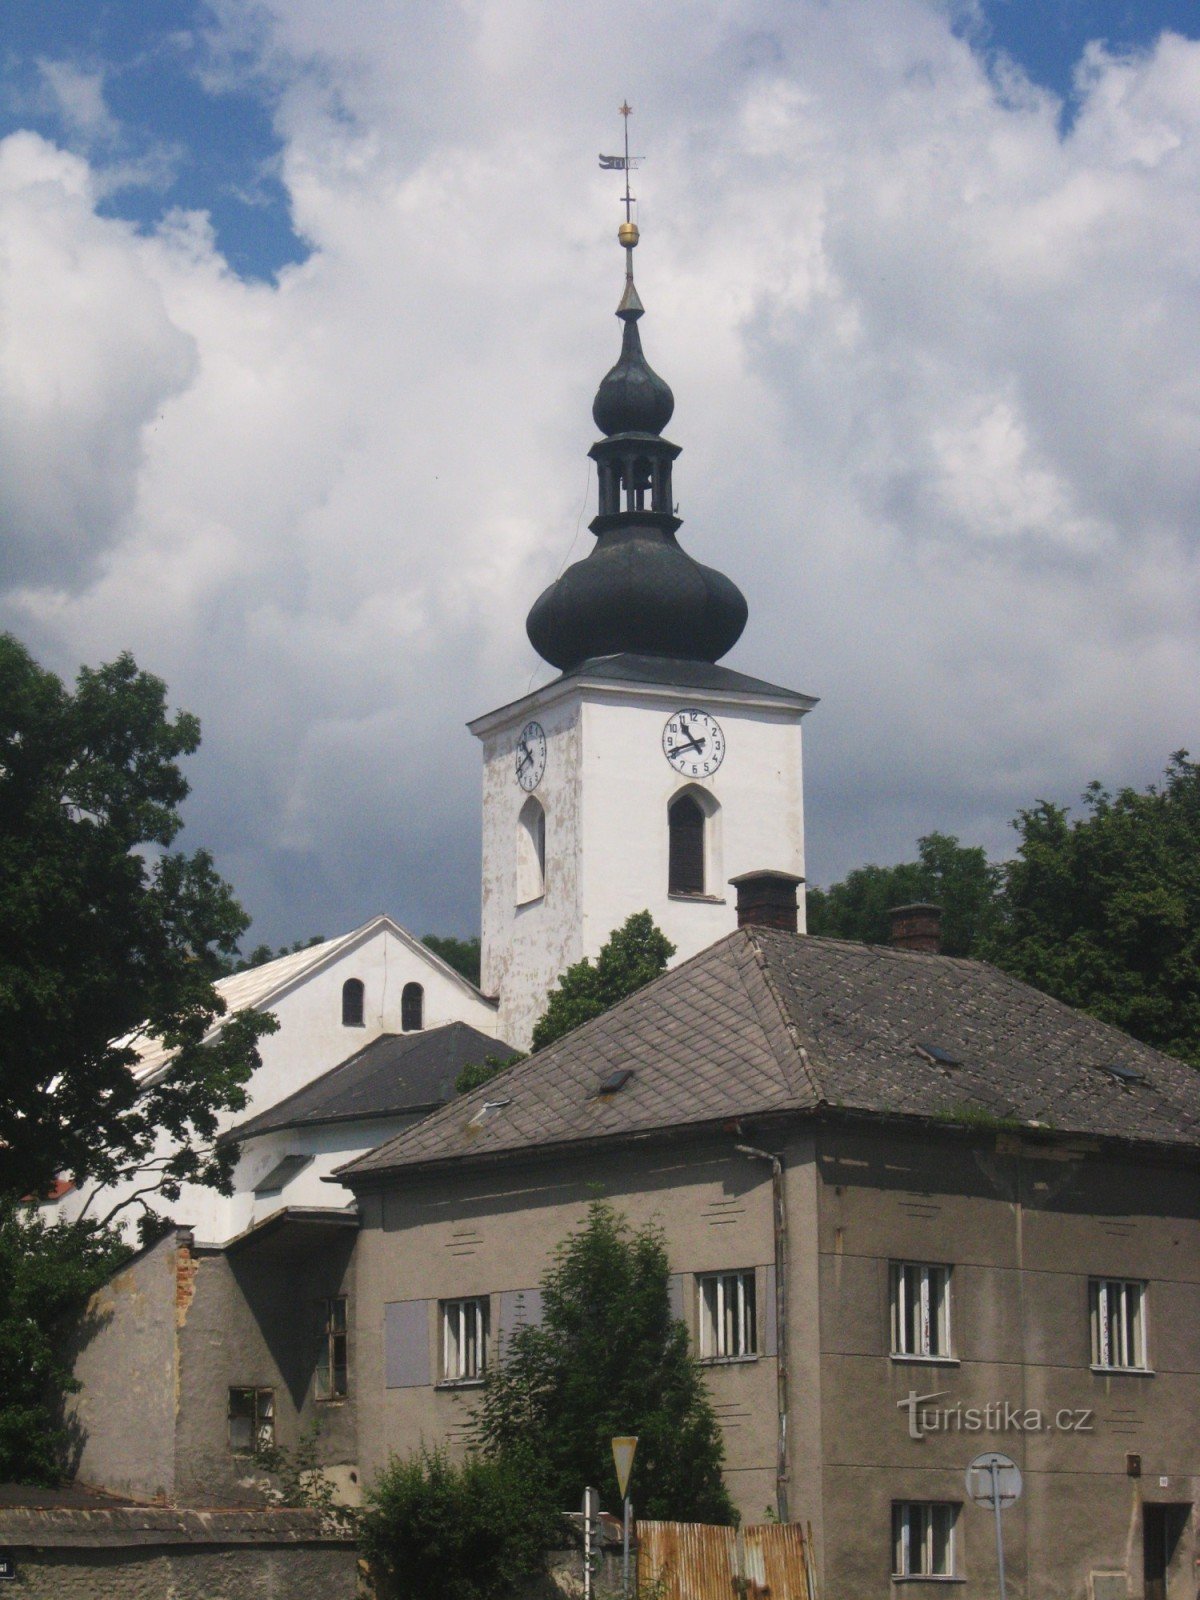 Biserica din Moravské Beroun